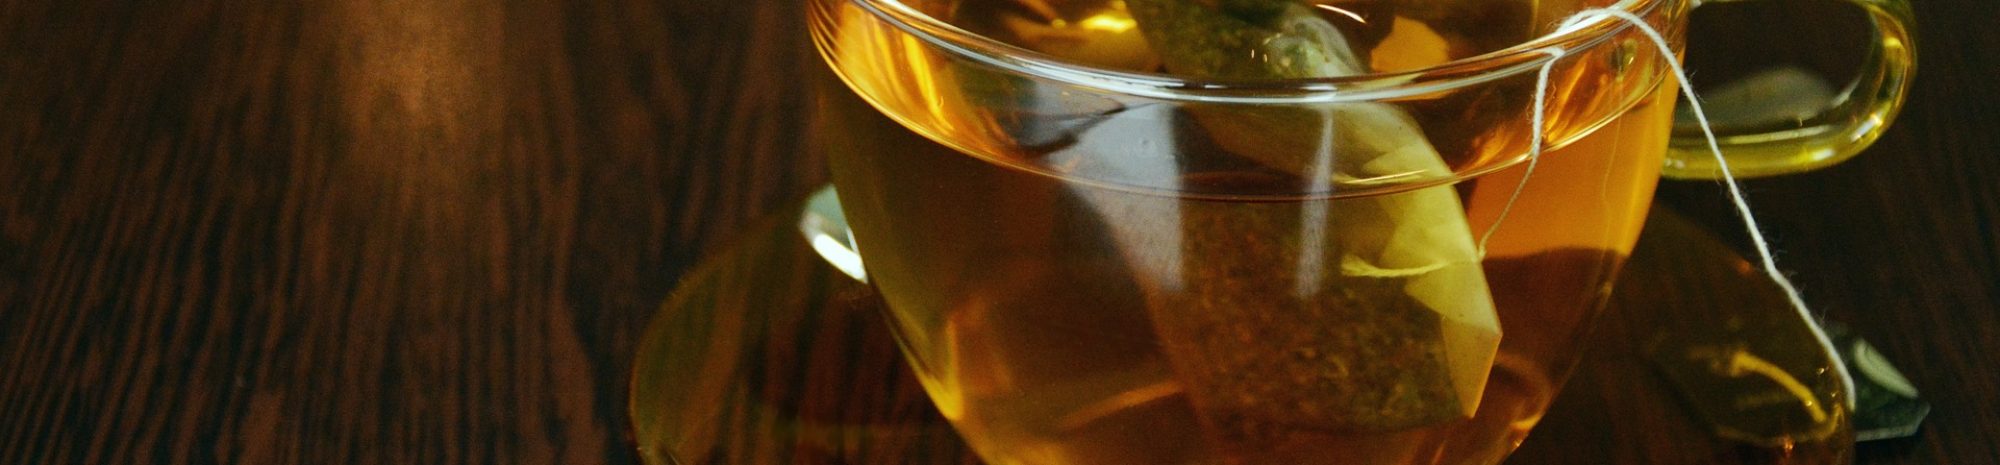 Comment le thé est devenu la boisson emblématique des anglais?